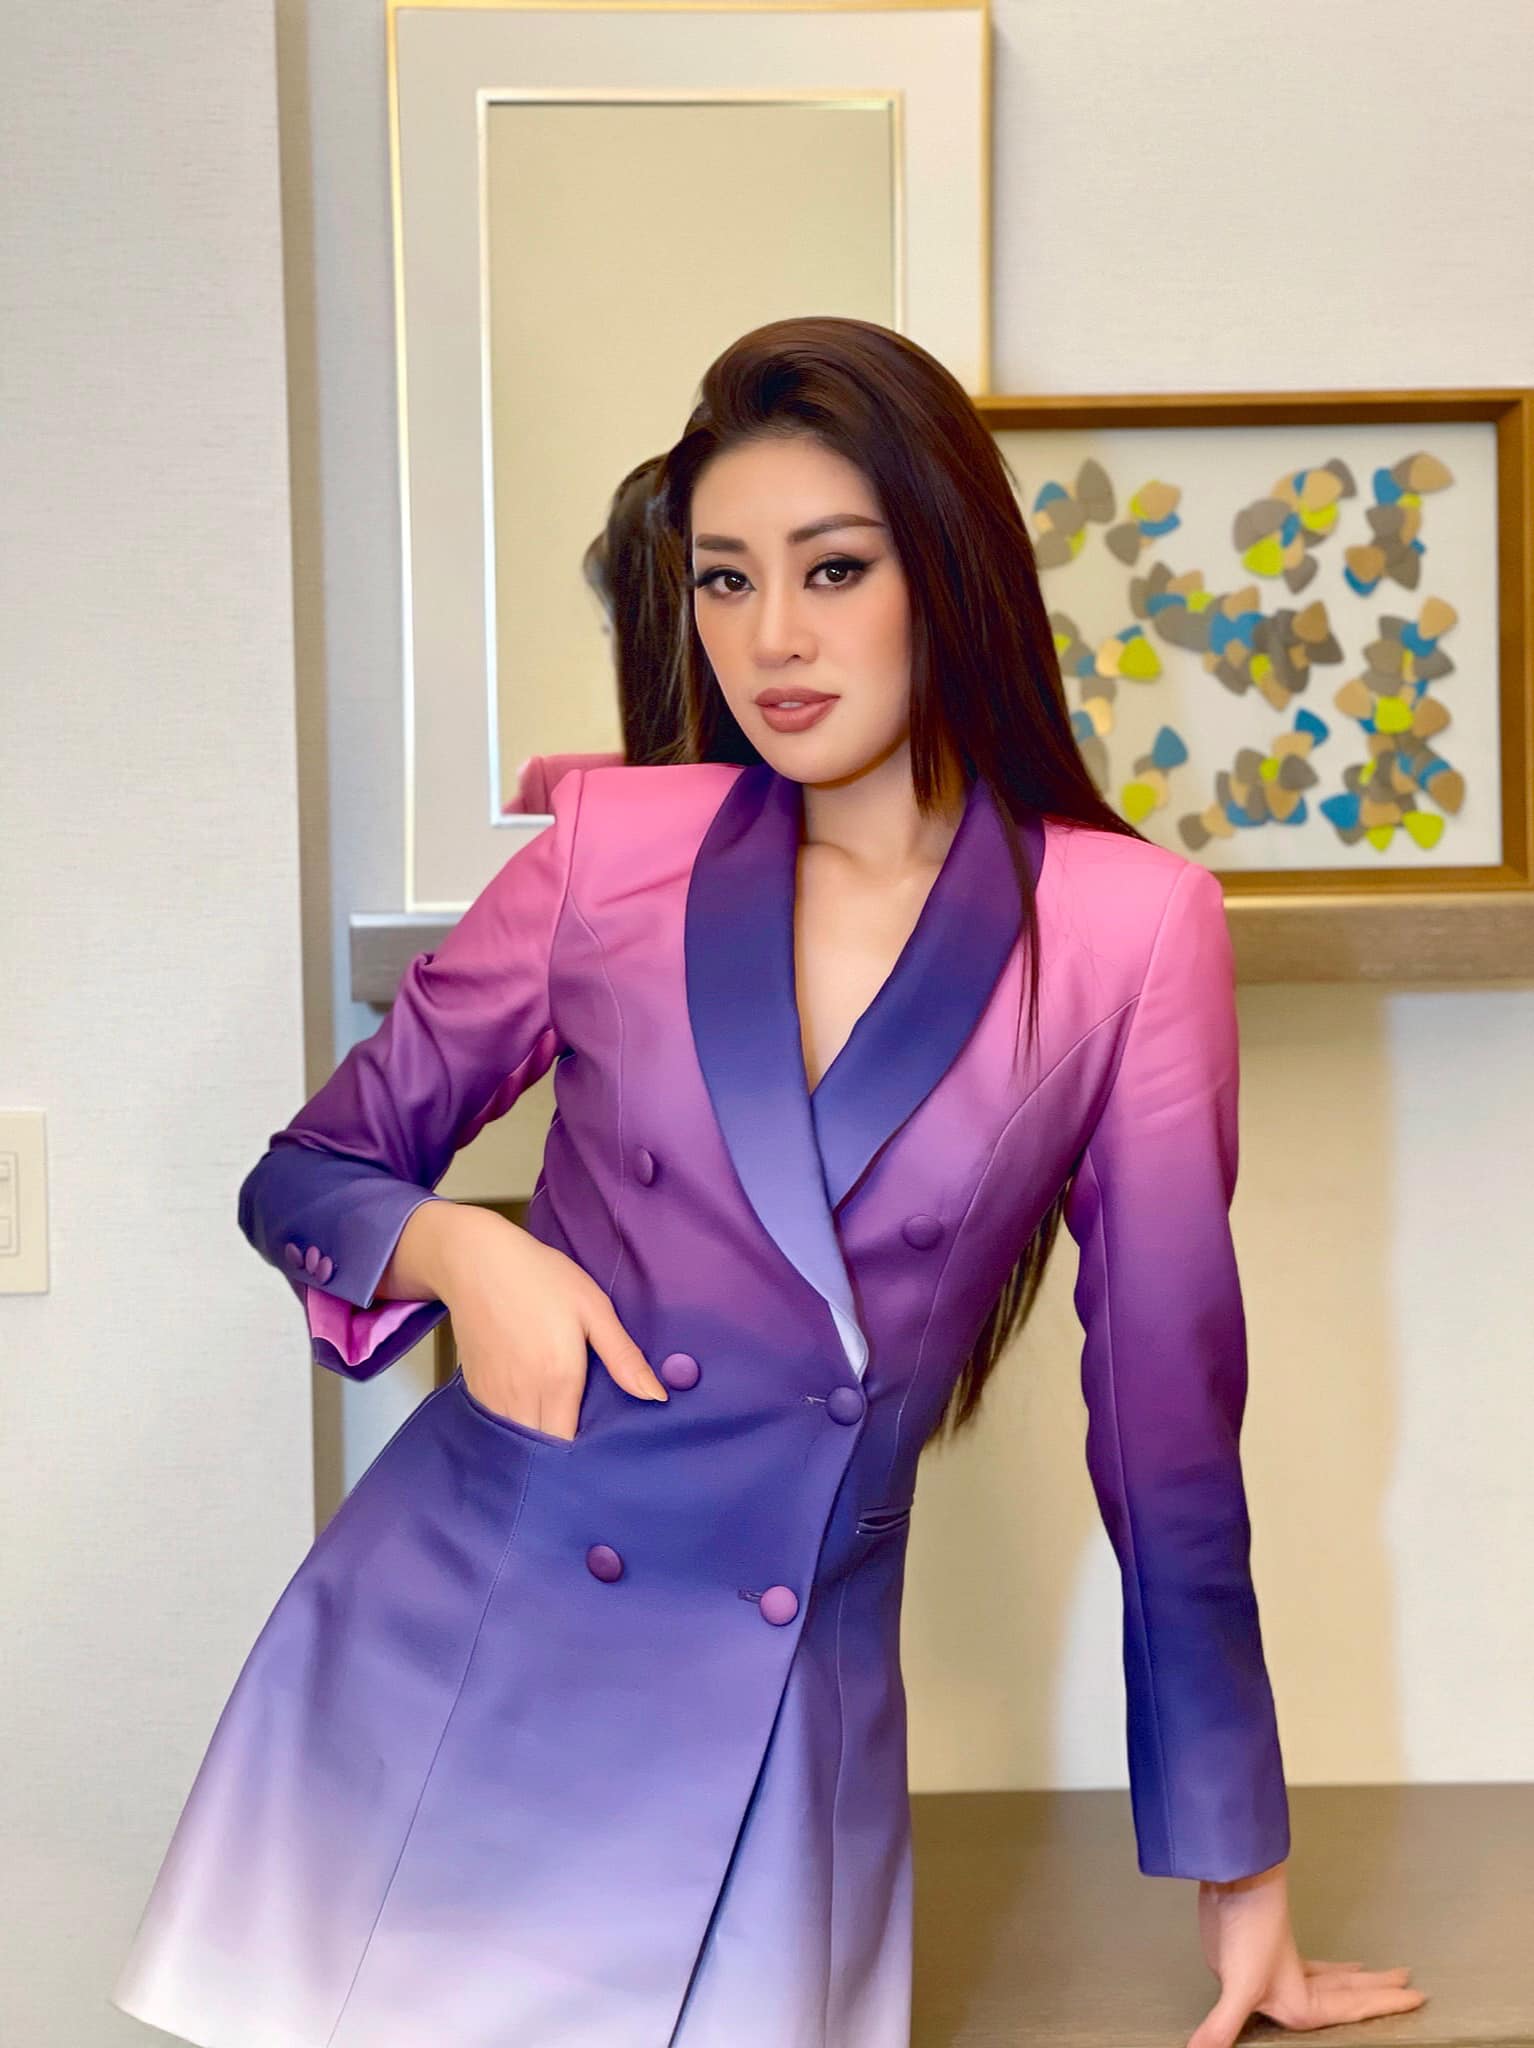 Trang phục vốn gắn liền với phong cách công sở trở nên trẻ trung và bắt mắt hơn khi Hoa hậu Khánh Vân sử dụng các tông màu ombre pha trộn giữa sắc tím và hồng nhạt. 